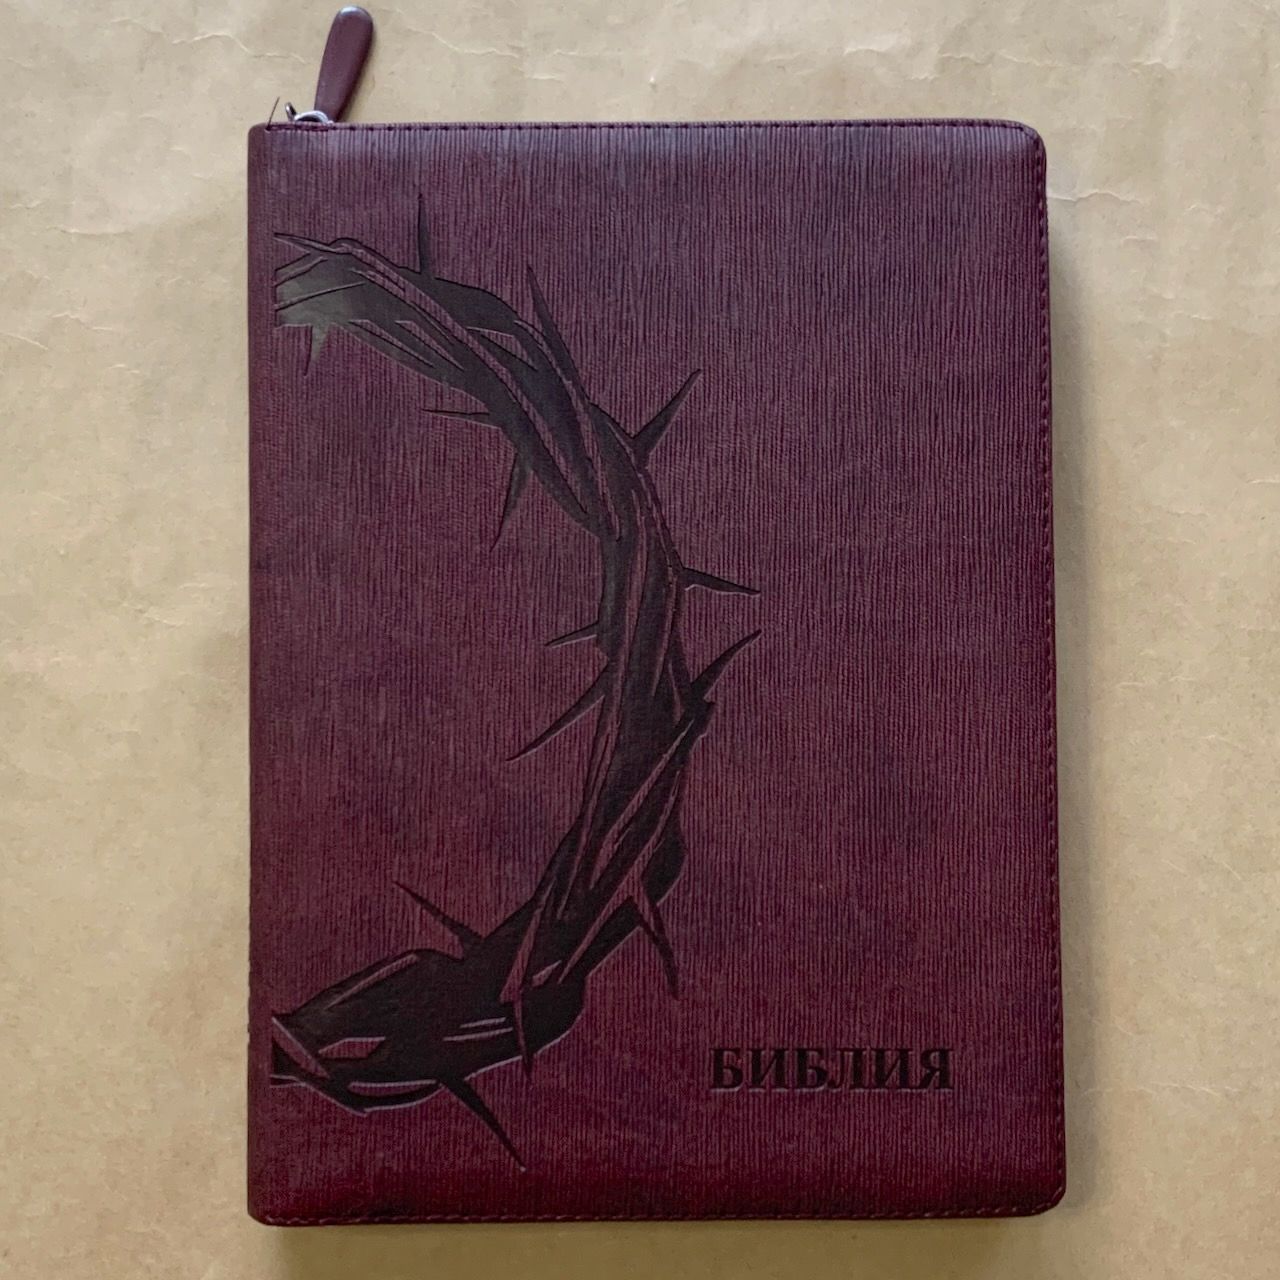 Библия 076z код F4, дизайн "Терновый венец", переплет из искусственной кожи на молнии, цвет темно-бордовый ребристый, размер 180x243 мм